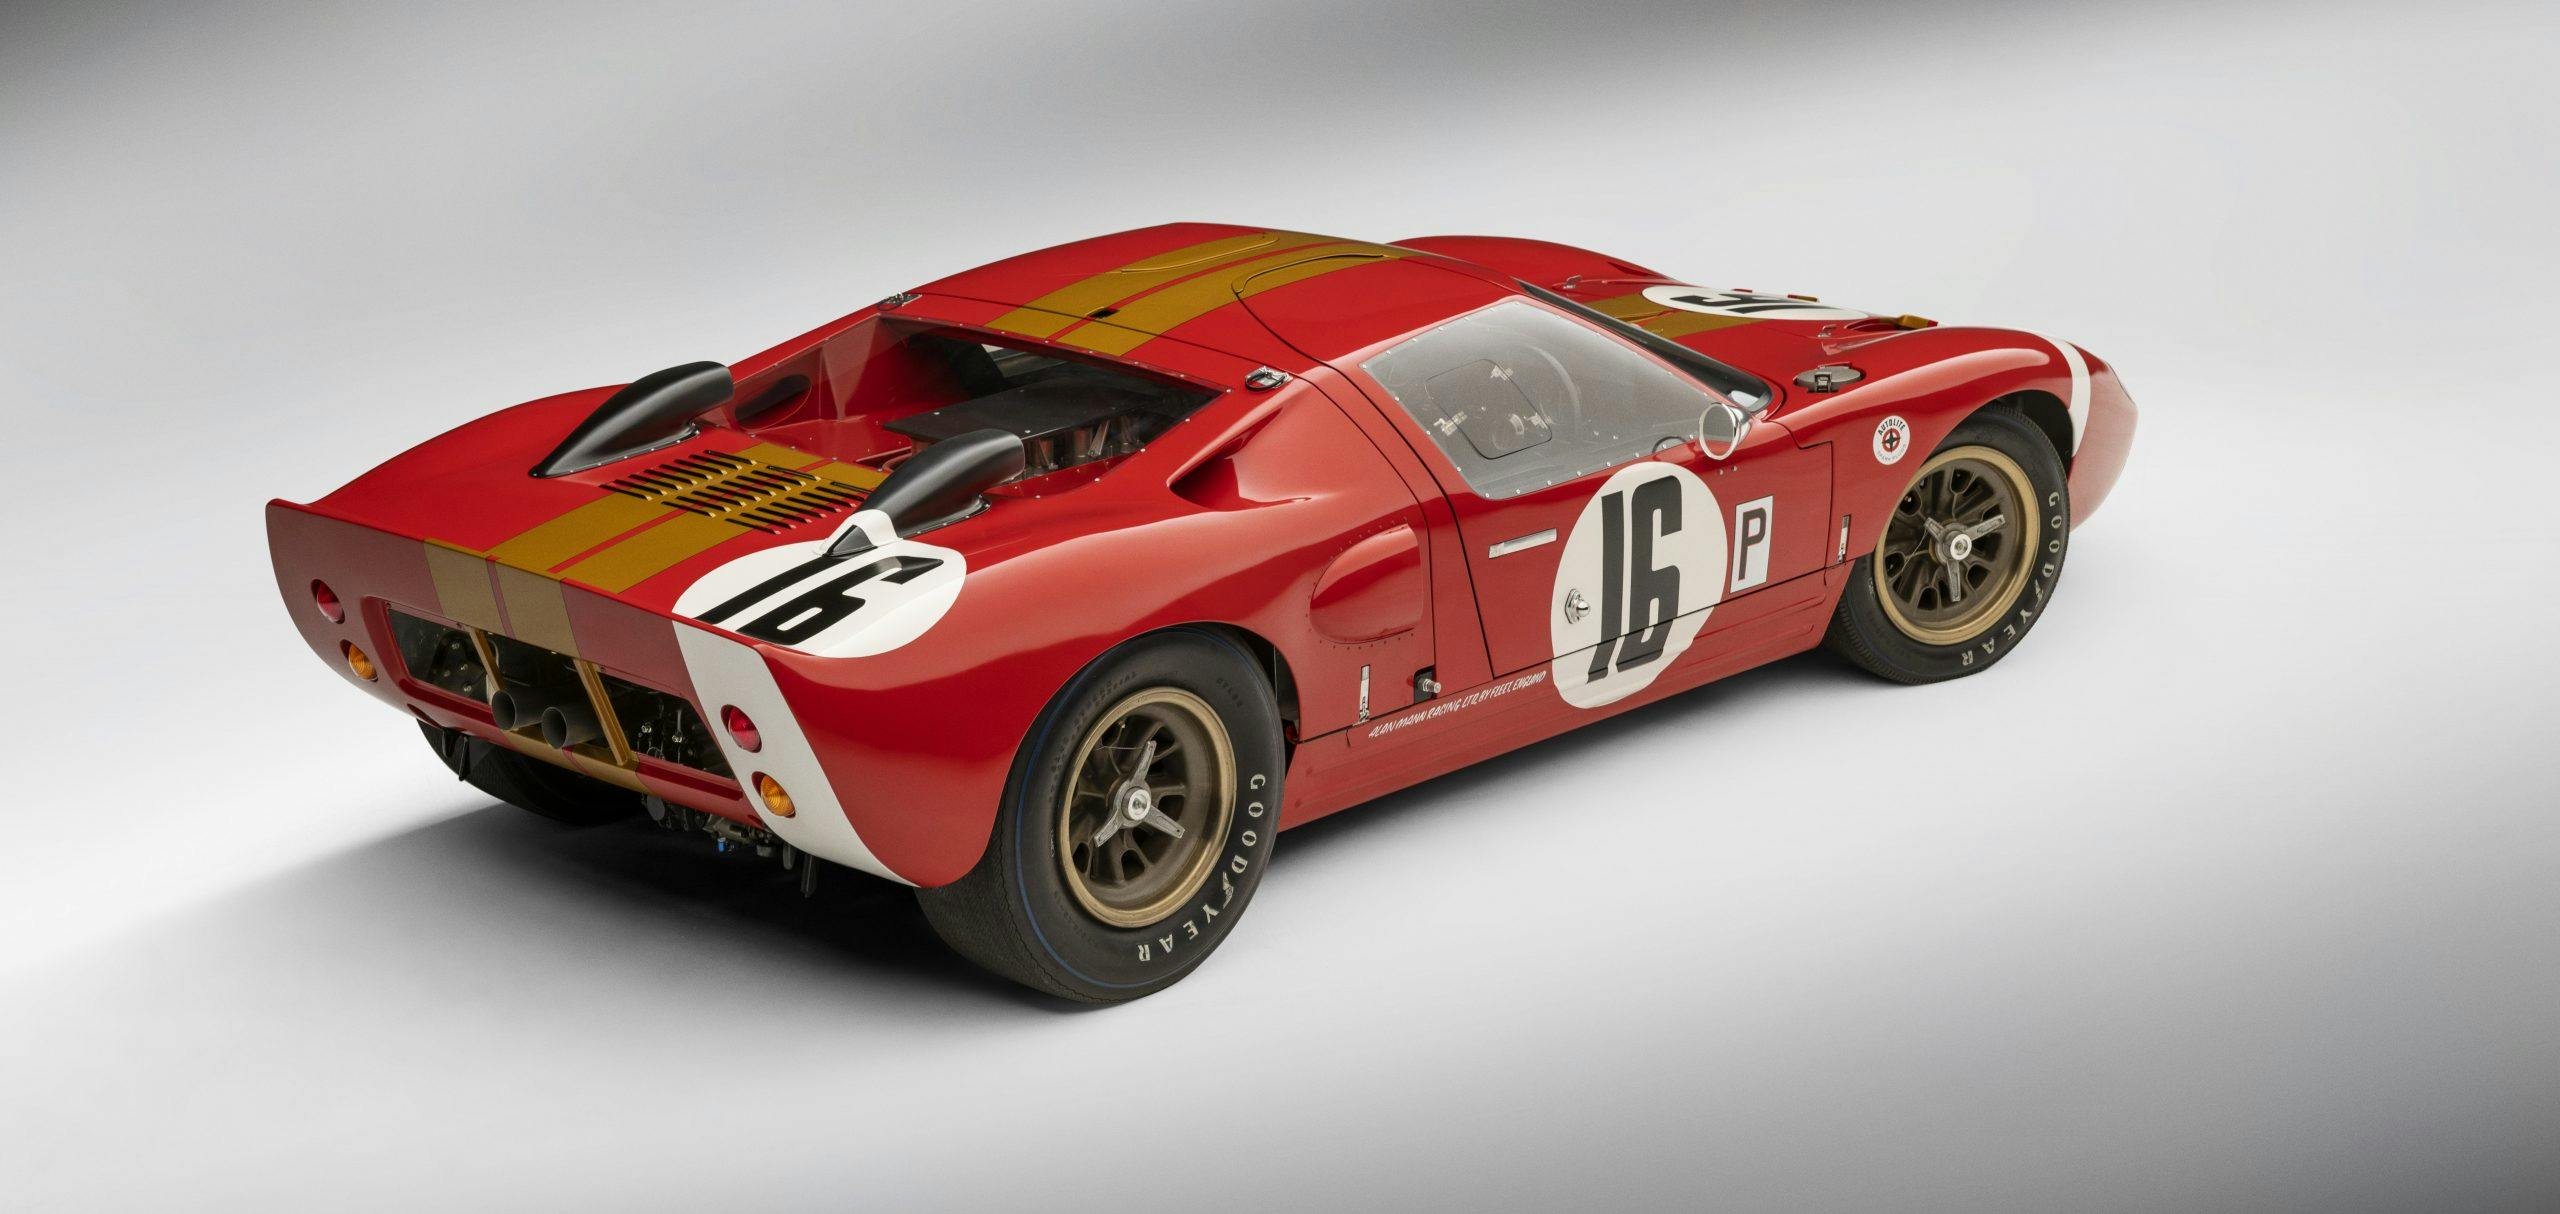 1966 Ford “AM GT-1” prototype Le Mans Alan Mann